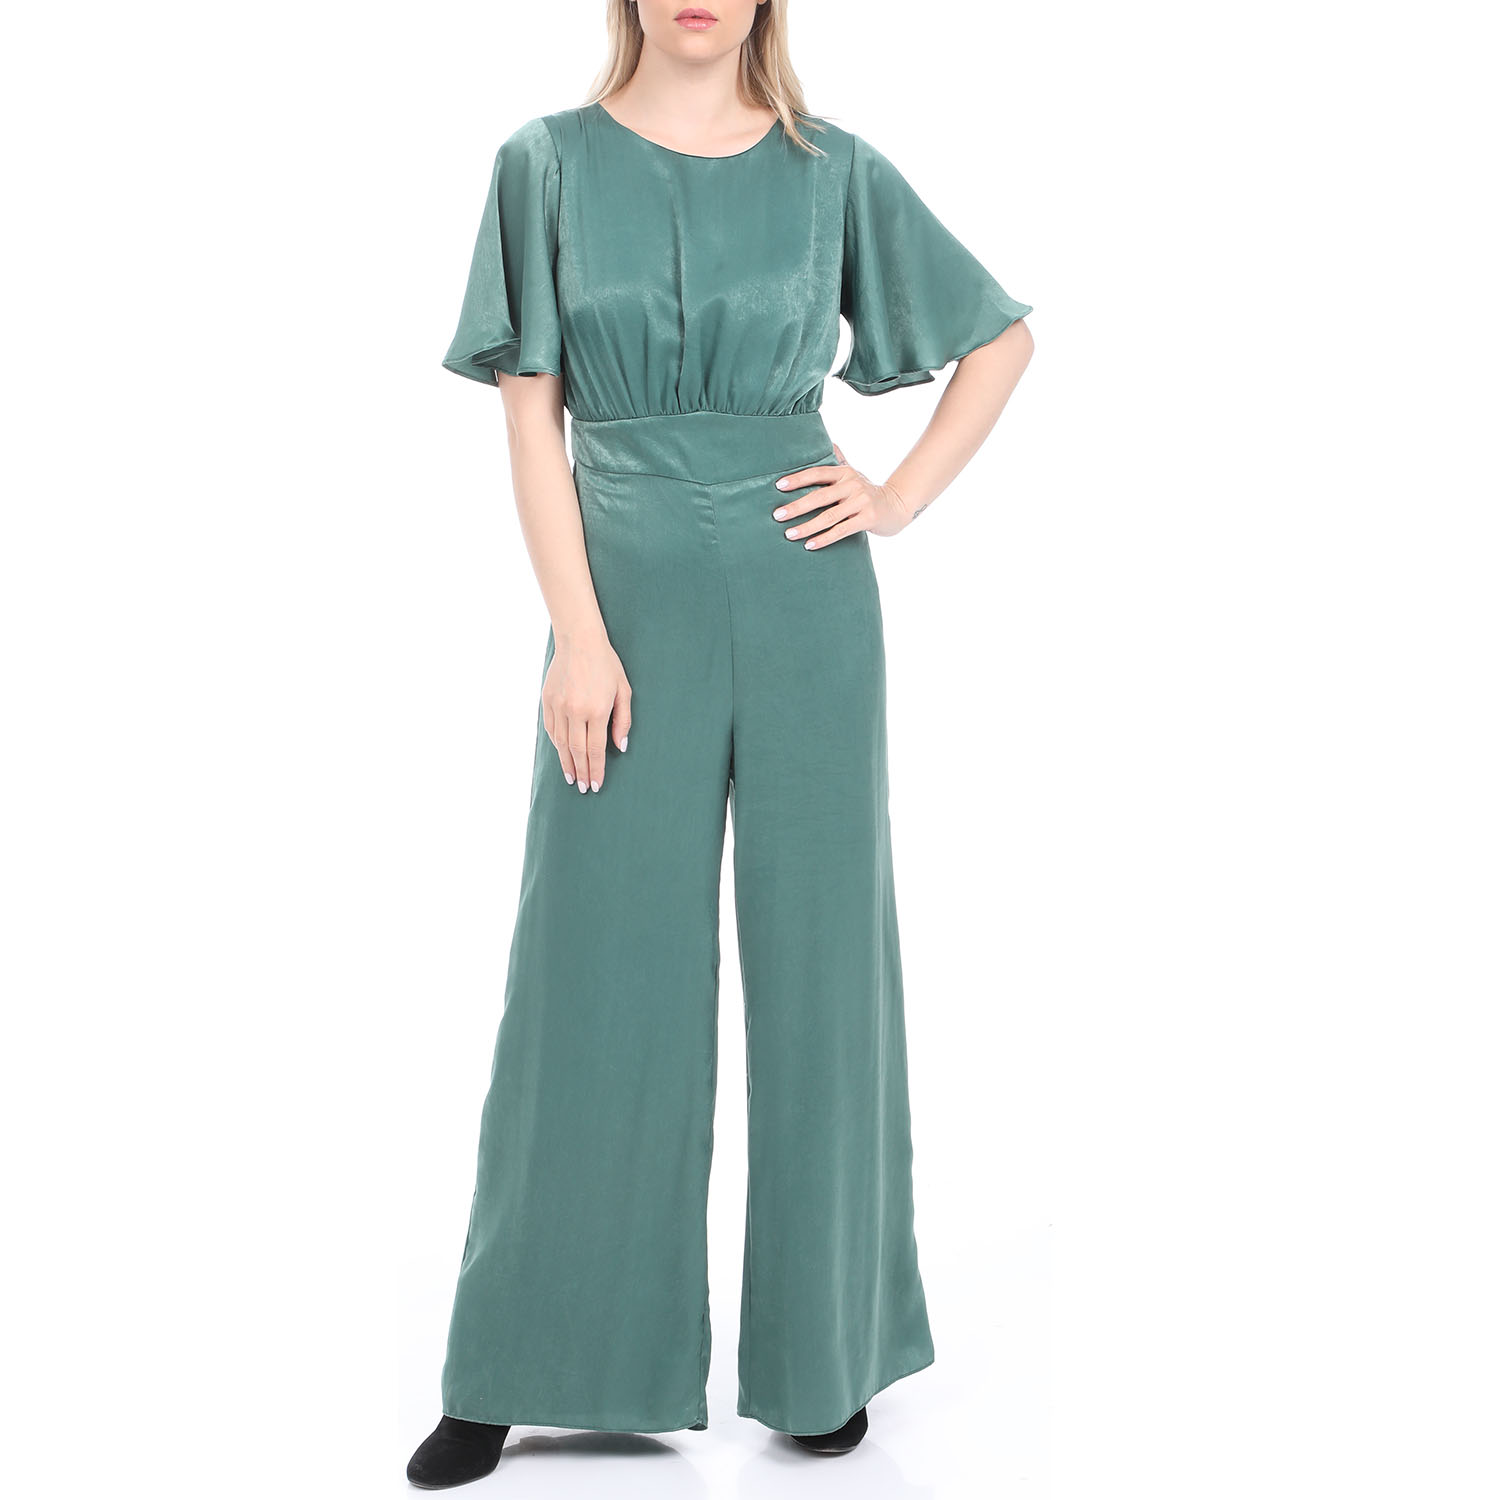 Γυναικεία/Ρούχα/Παντελόνια/Ολόσωμες Φόρμες ATTRATTIVO - Γυναικεία ολόσωμη φόρμα ATTRATTIVO πράσινη